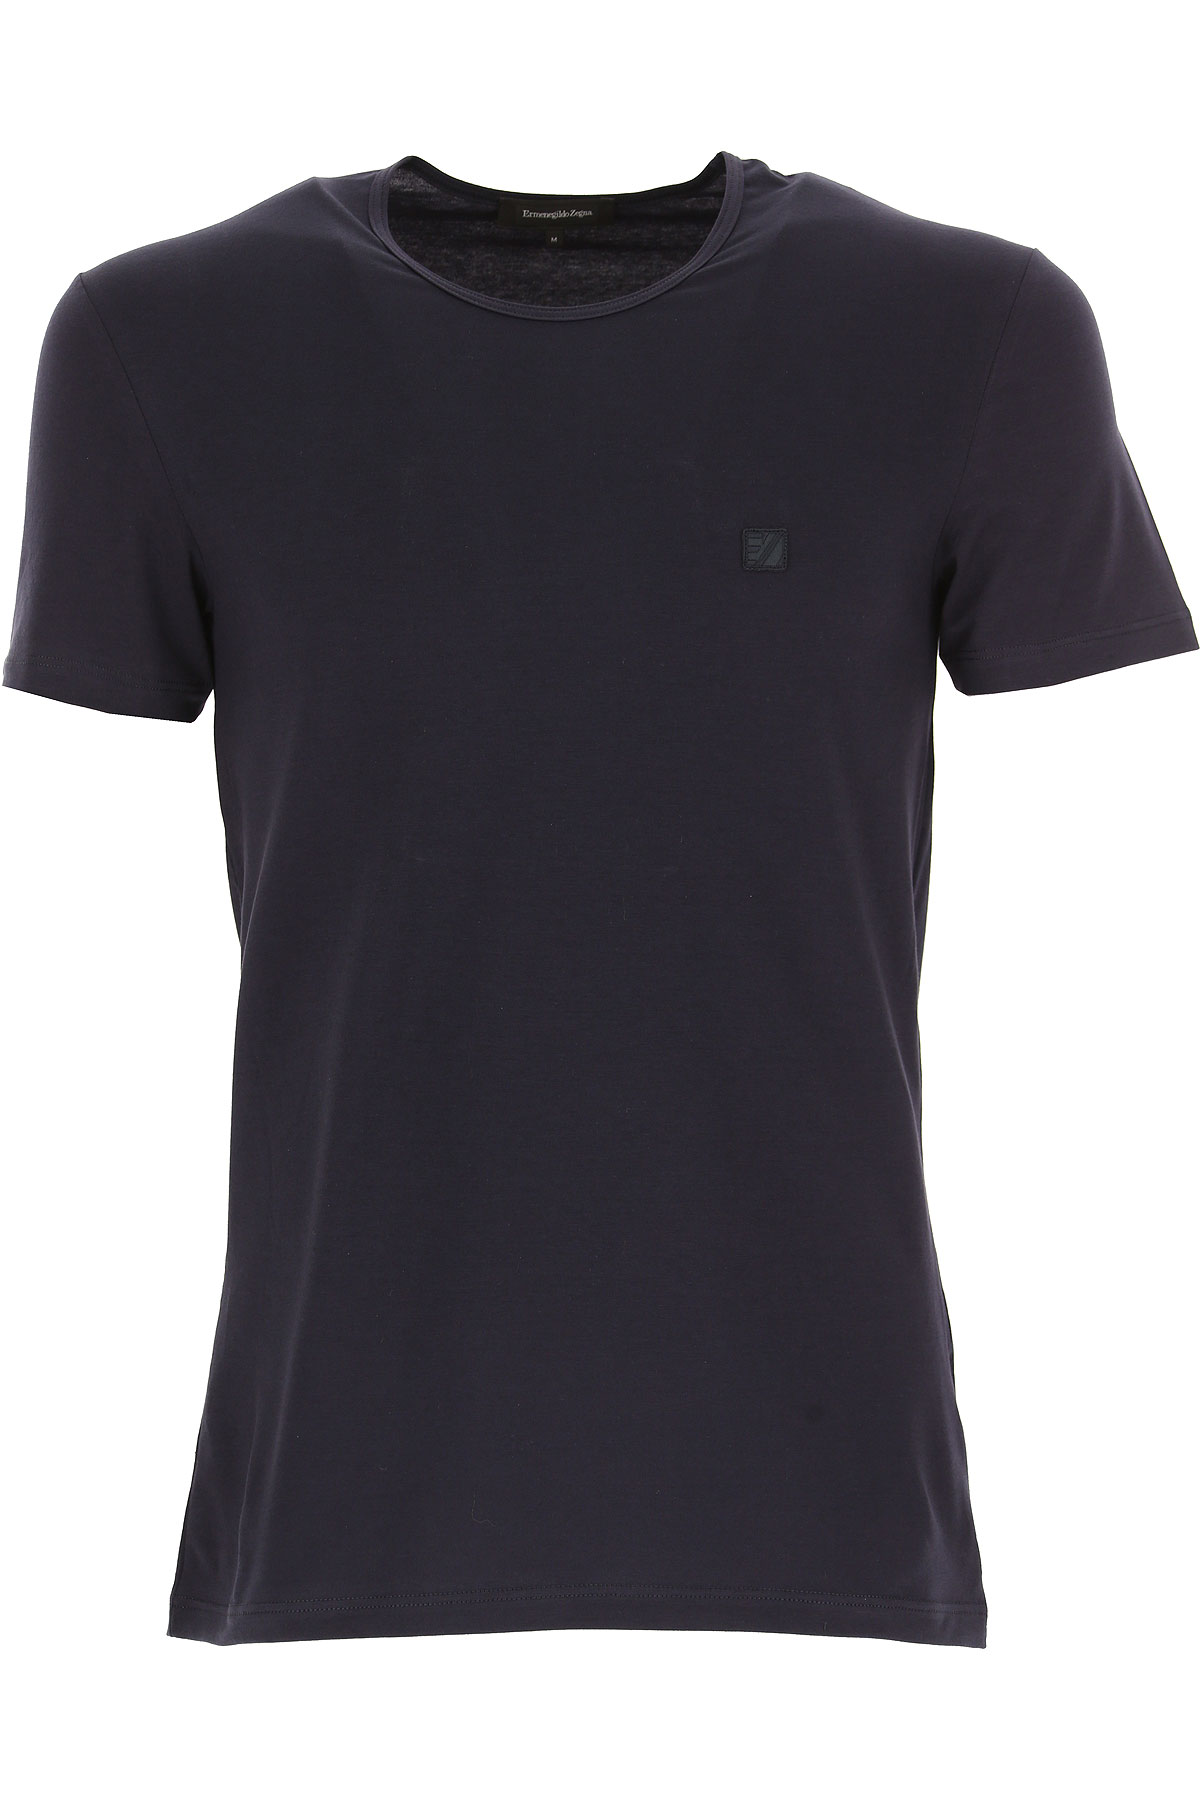 Ermenegildo Zegna T-shirt Homme , Bleu foncé, Coton, 2017, L M S XL